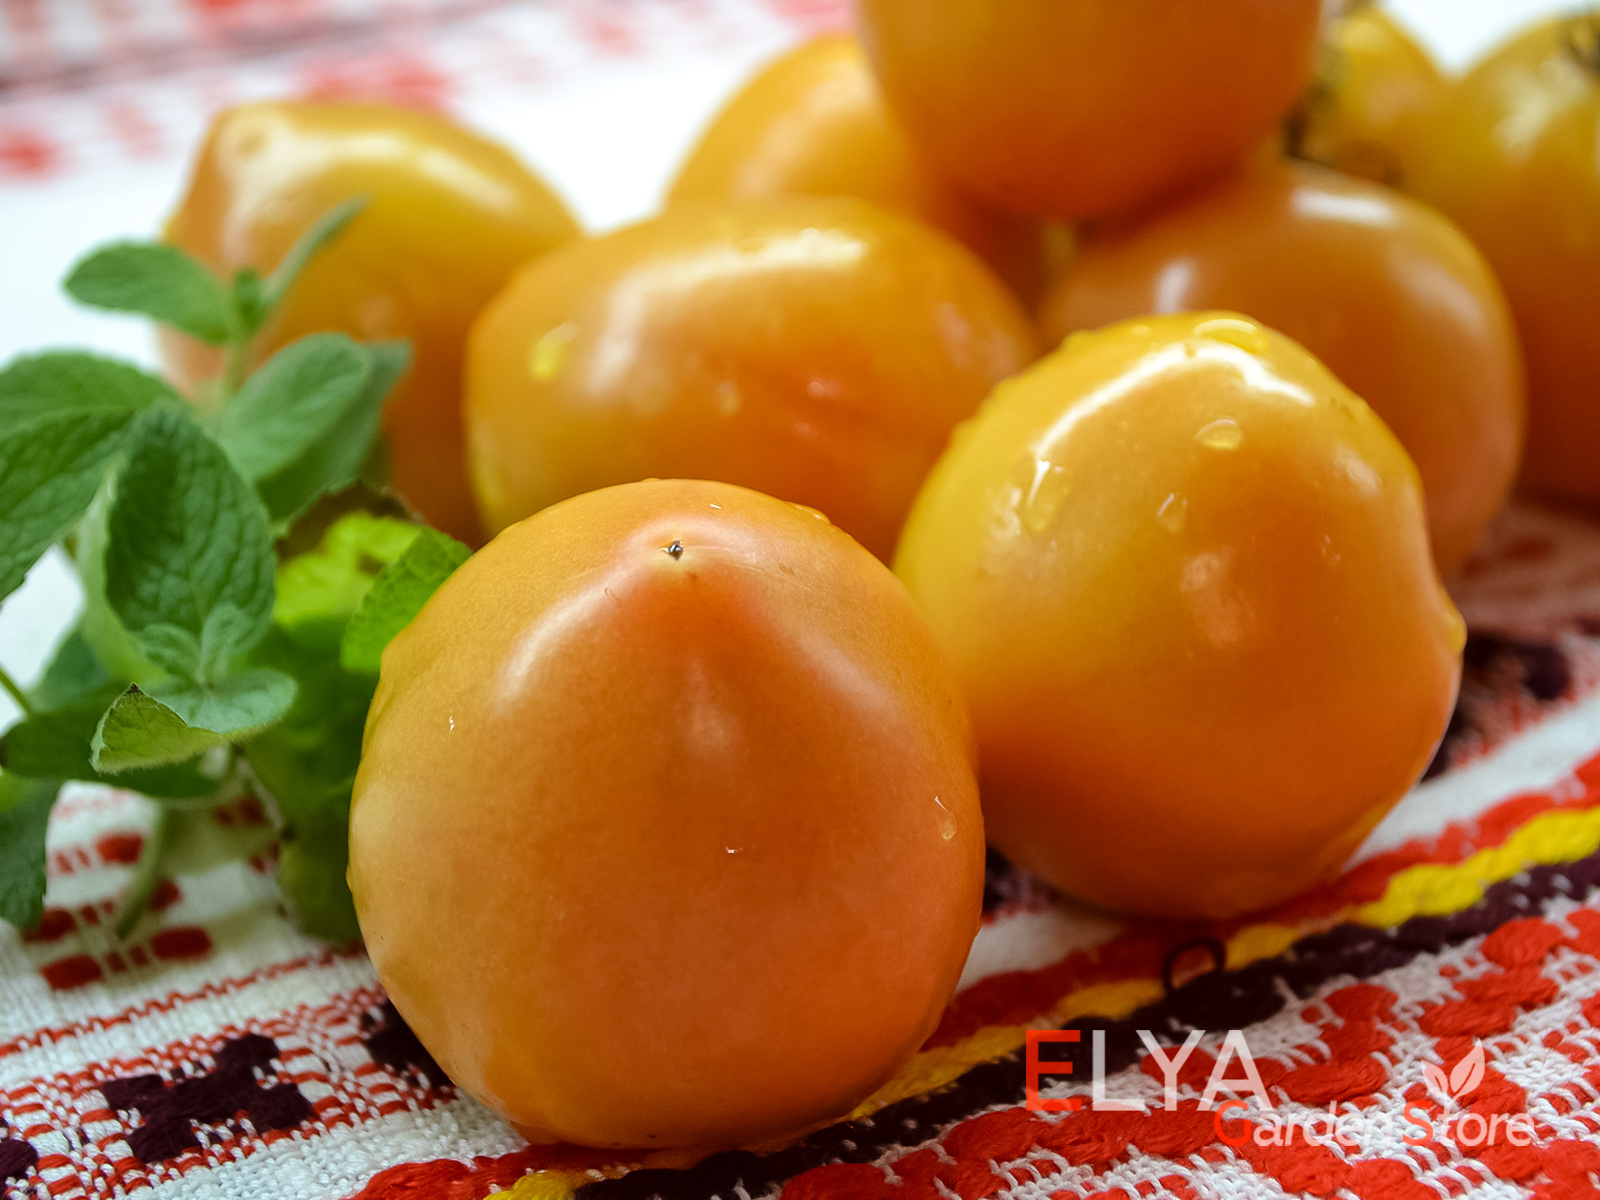 Коллекционный сорт томата Колядник - вкусный, долго хранится - фото магазина семян Elya Garden